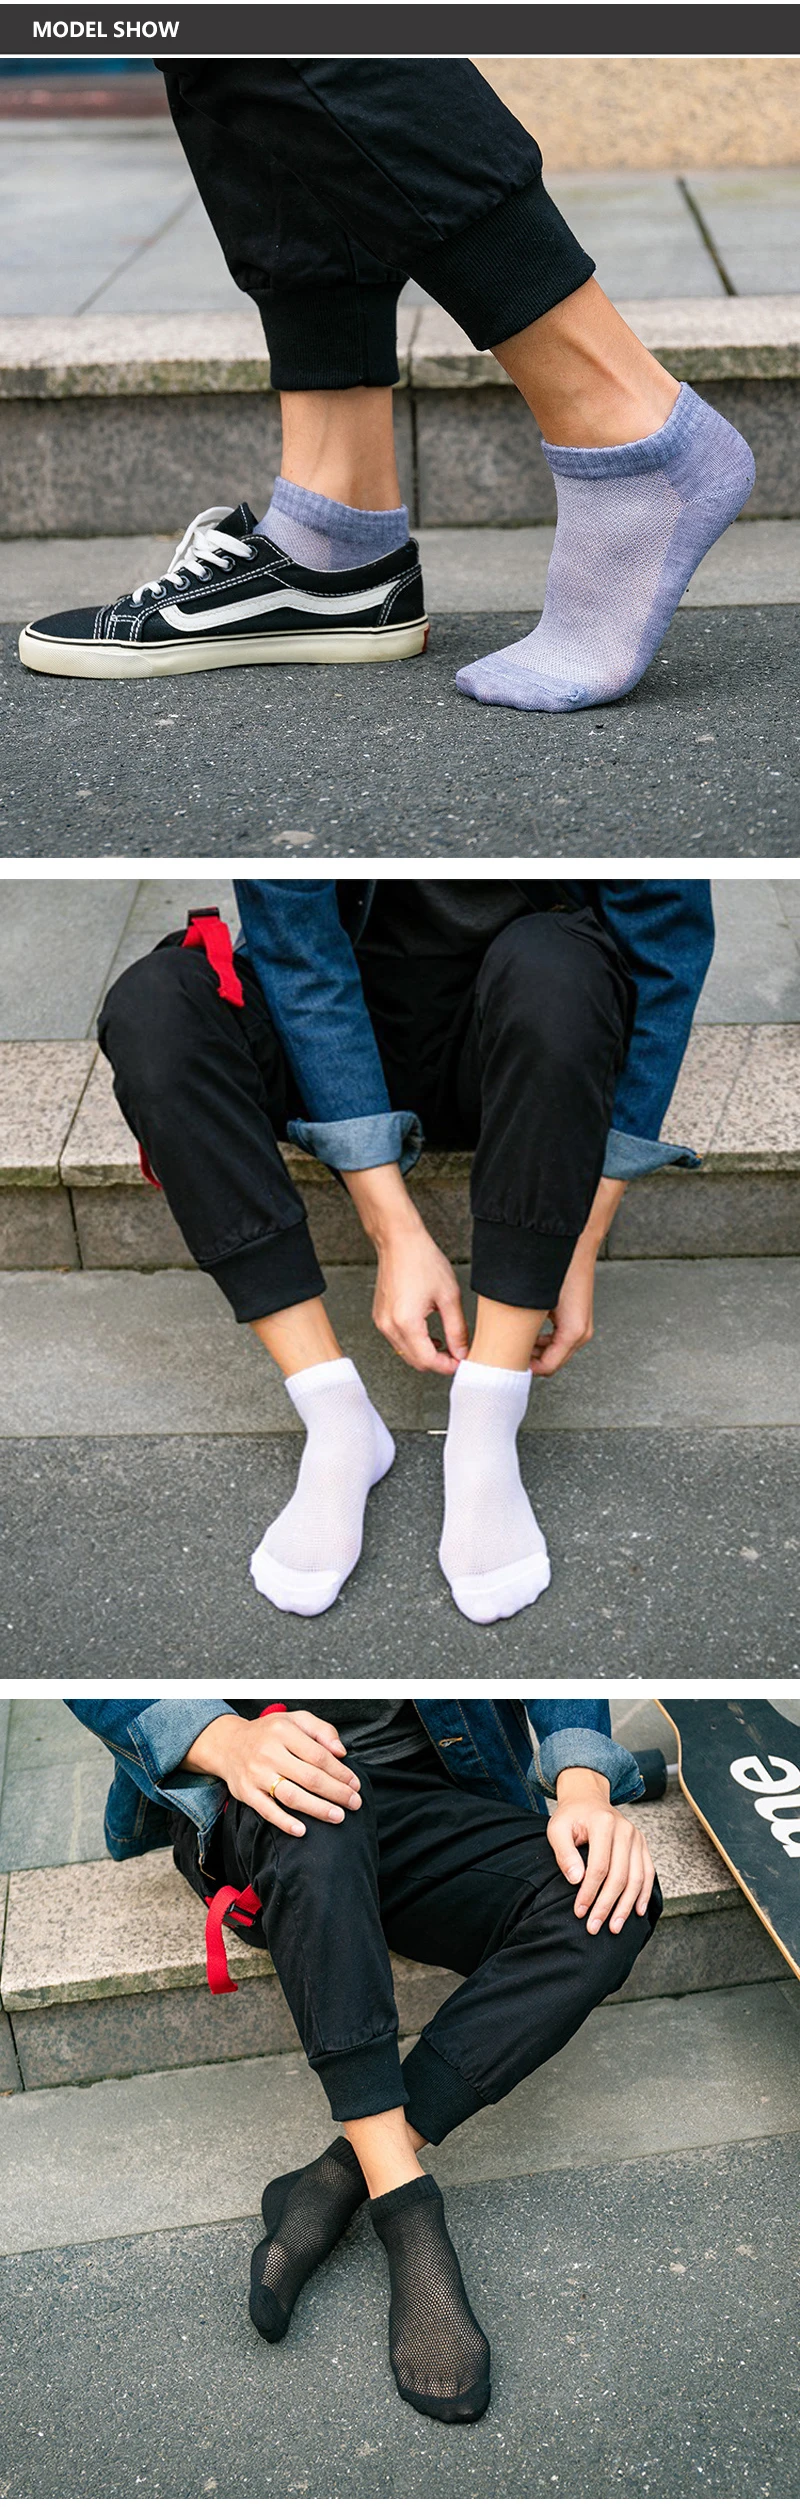 10 пар носков мужские уютные носки Meias хип-хоп брендовые носки бизнес 3 цвета четыре сезона BreathableSock Meias Homem Calcetines